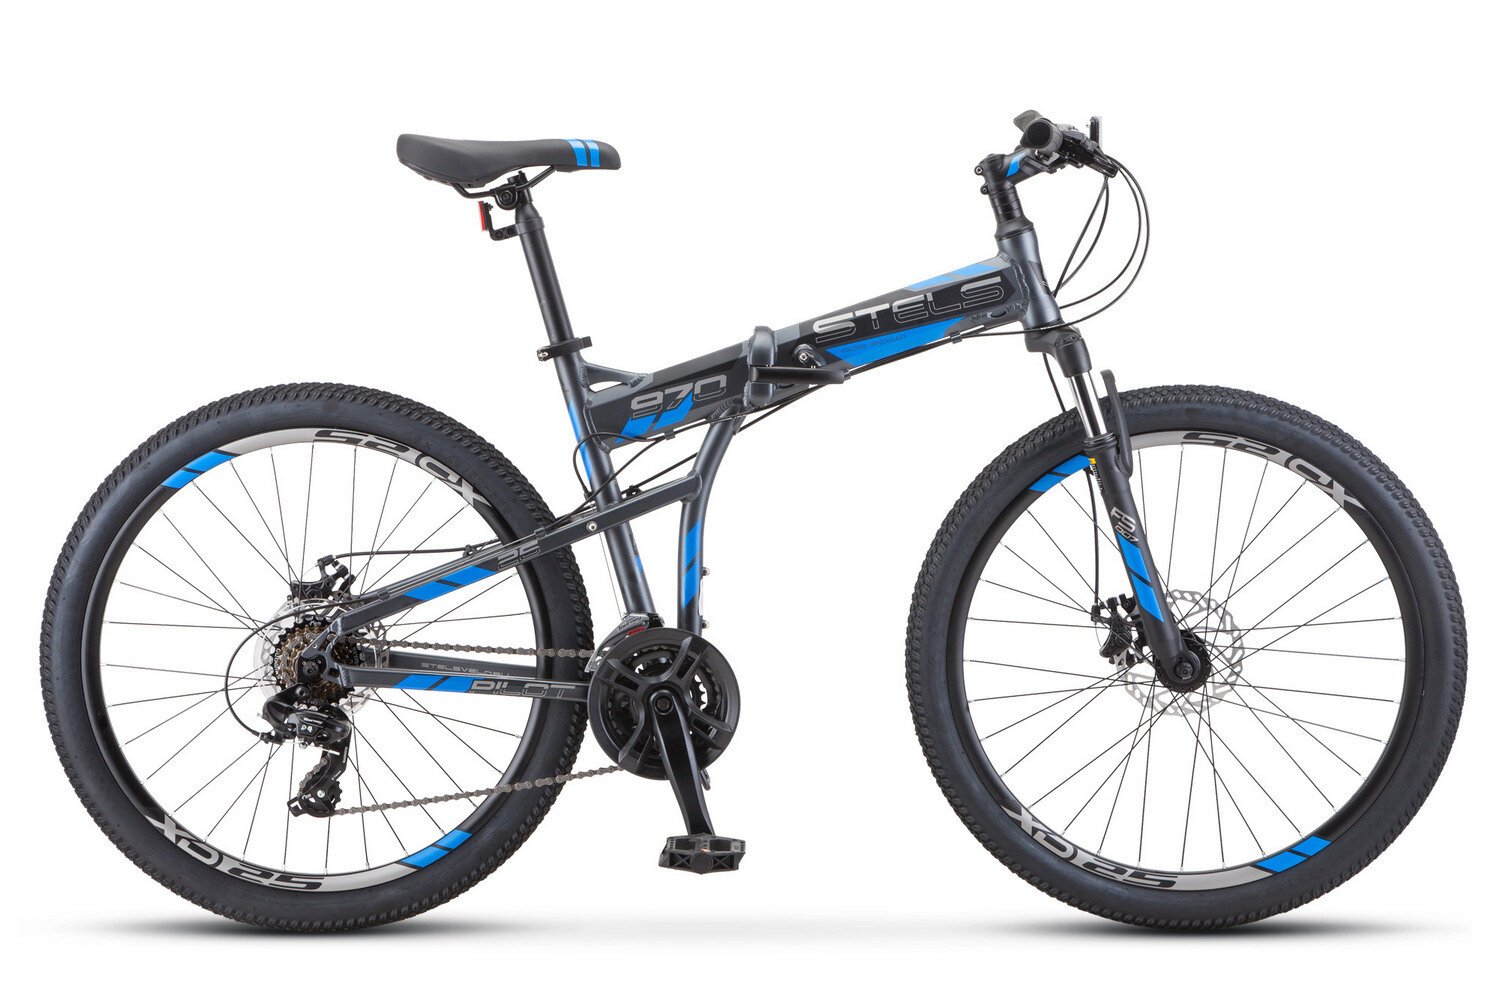 Складной велосипед Stels Pilot 970 MD V022 (2020), 17.5", (161-178 см), антрацитовый, собран и настроен